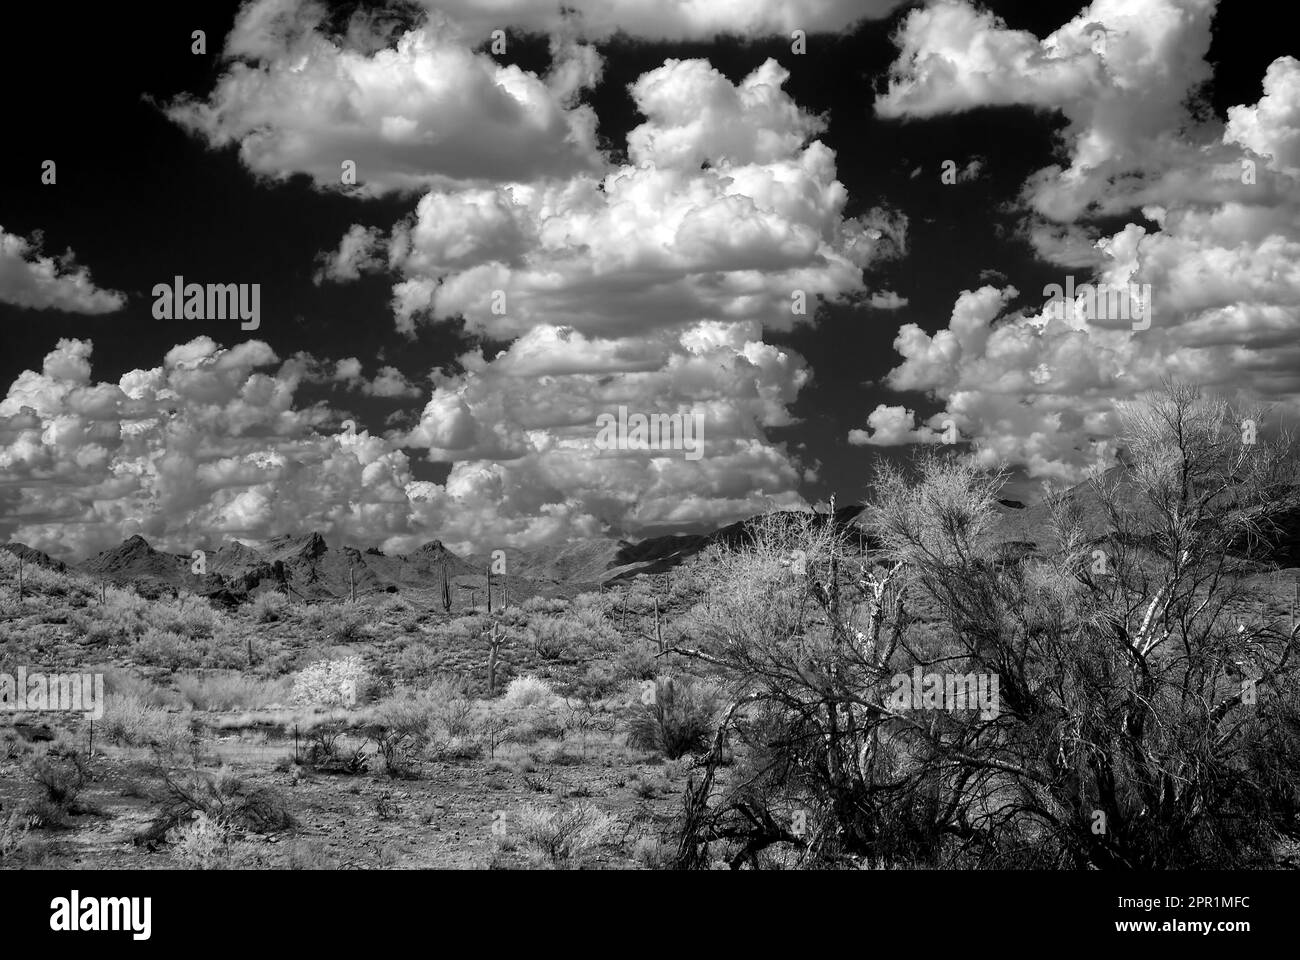 Die Sonora Wüste im Zentrum von Arizona USA Stockfoto